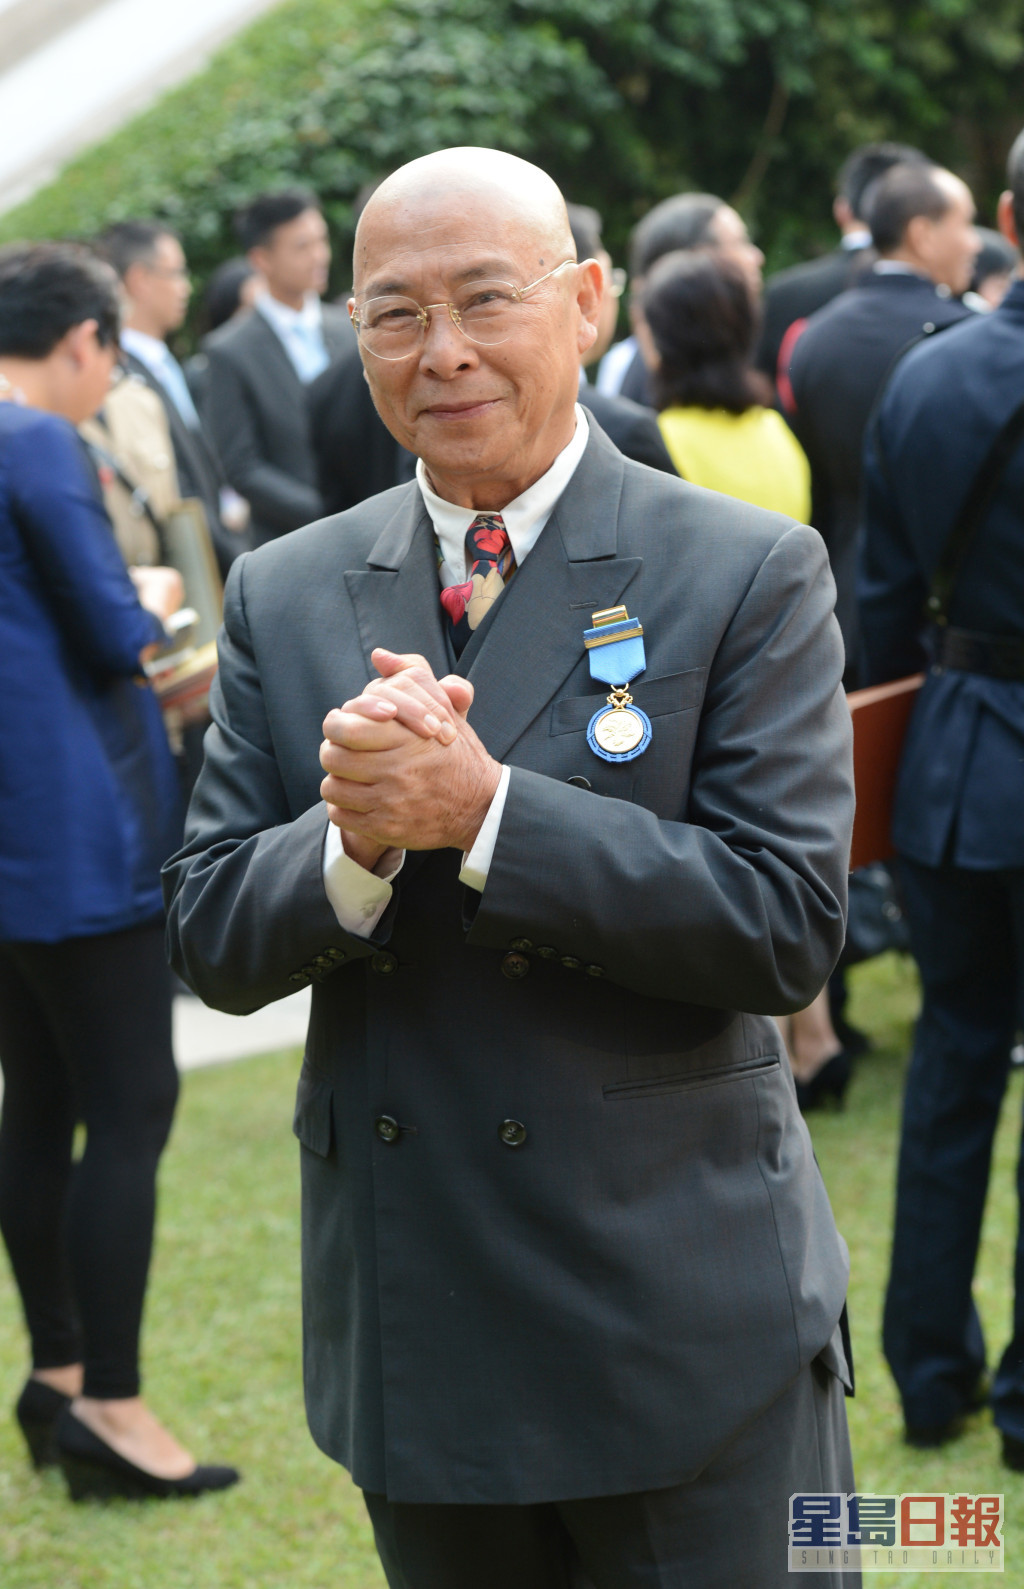 刘兆铭为香港舞蹈的开拓者，2013年获港府颁发「荣誉勋章」，以表扬他对演艺文化界的贡戏。